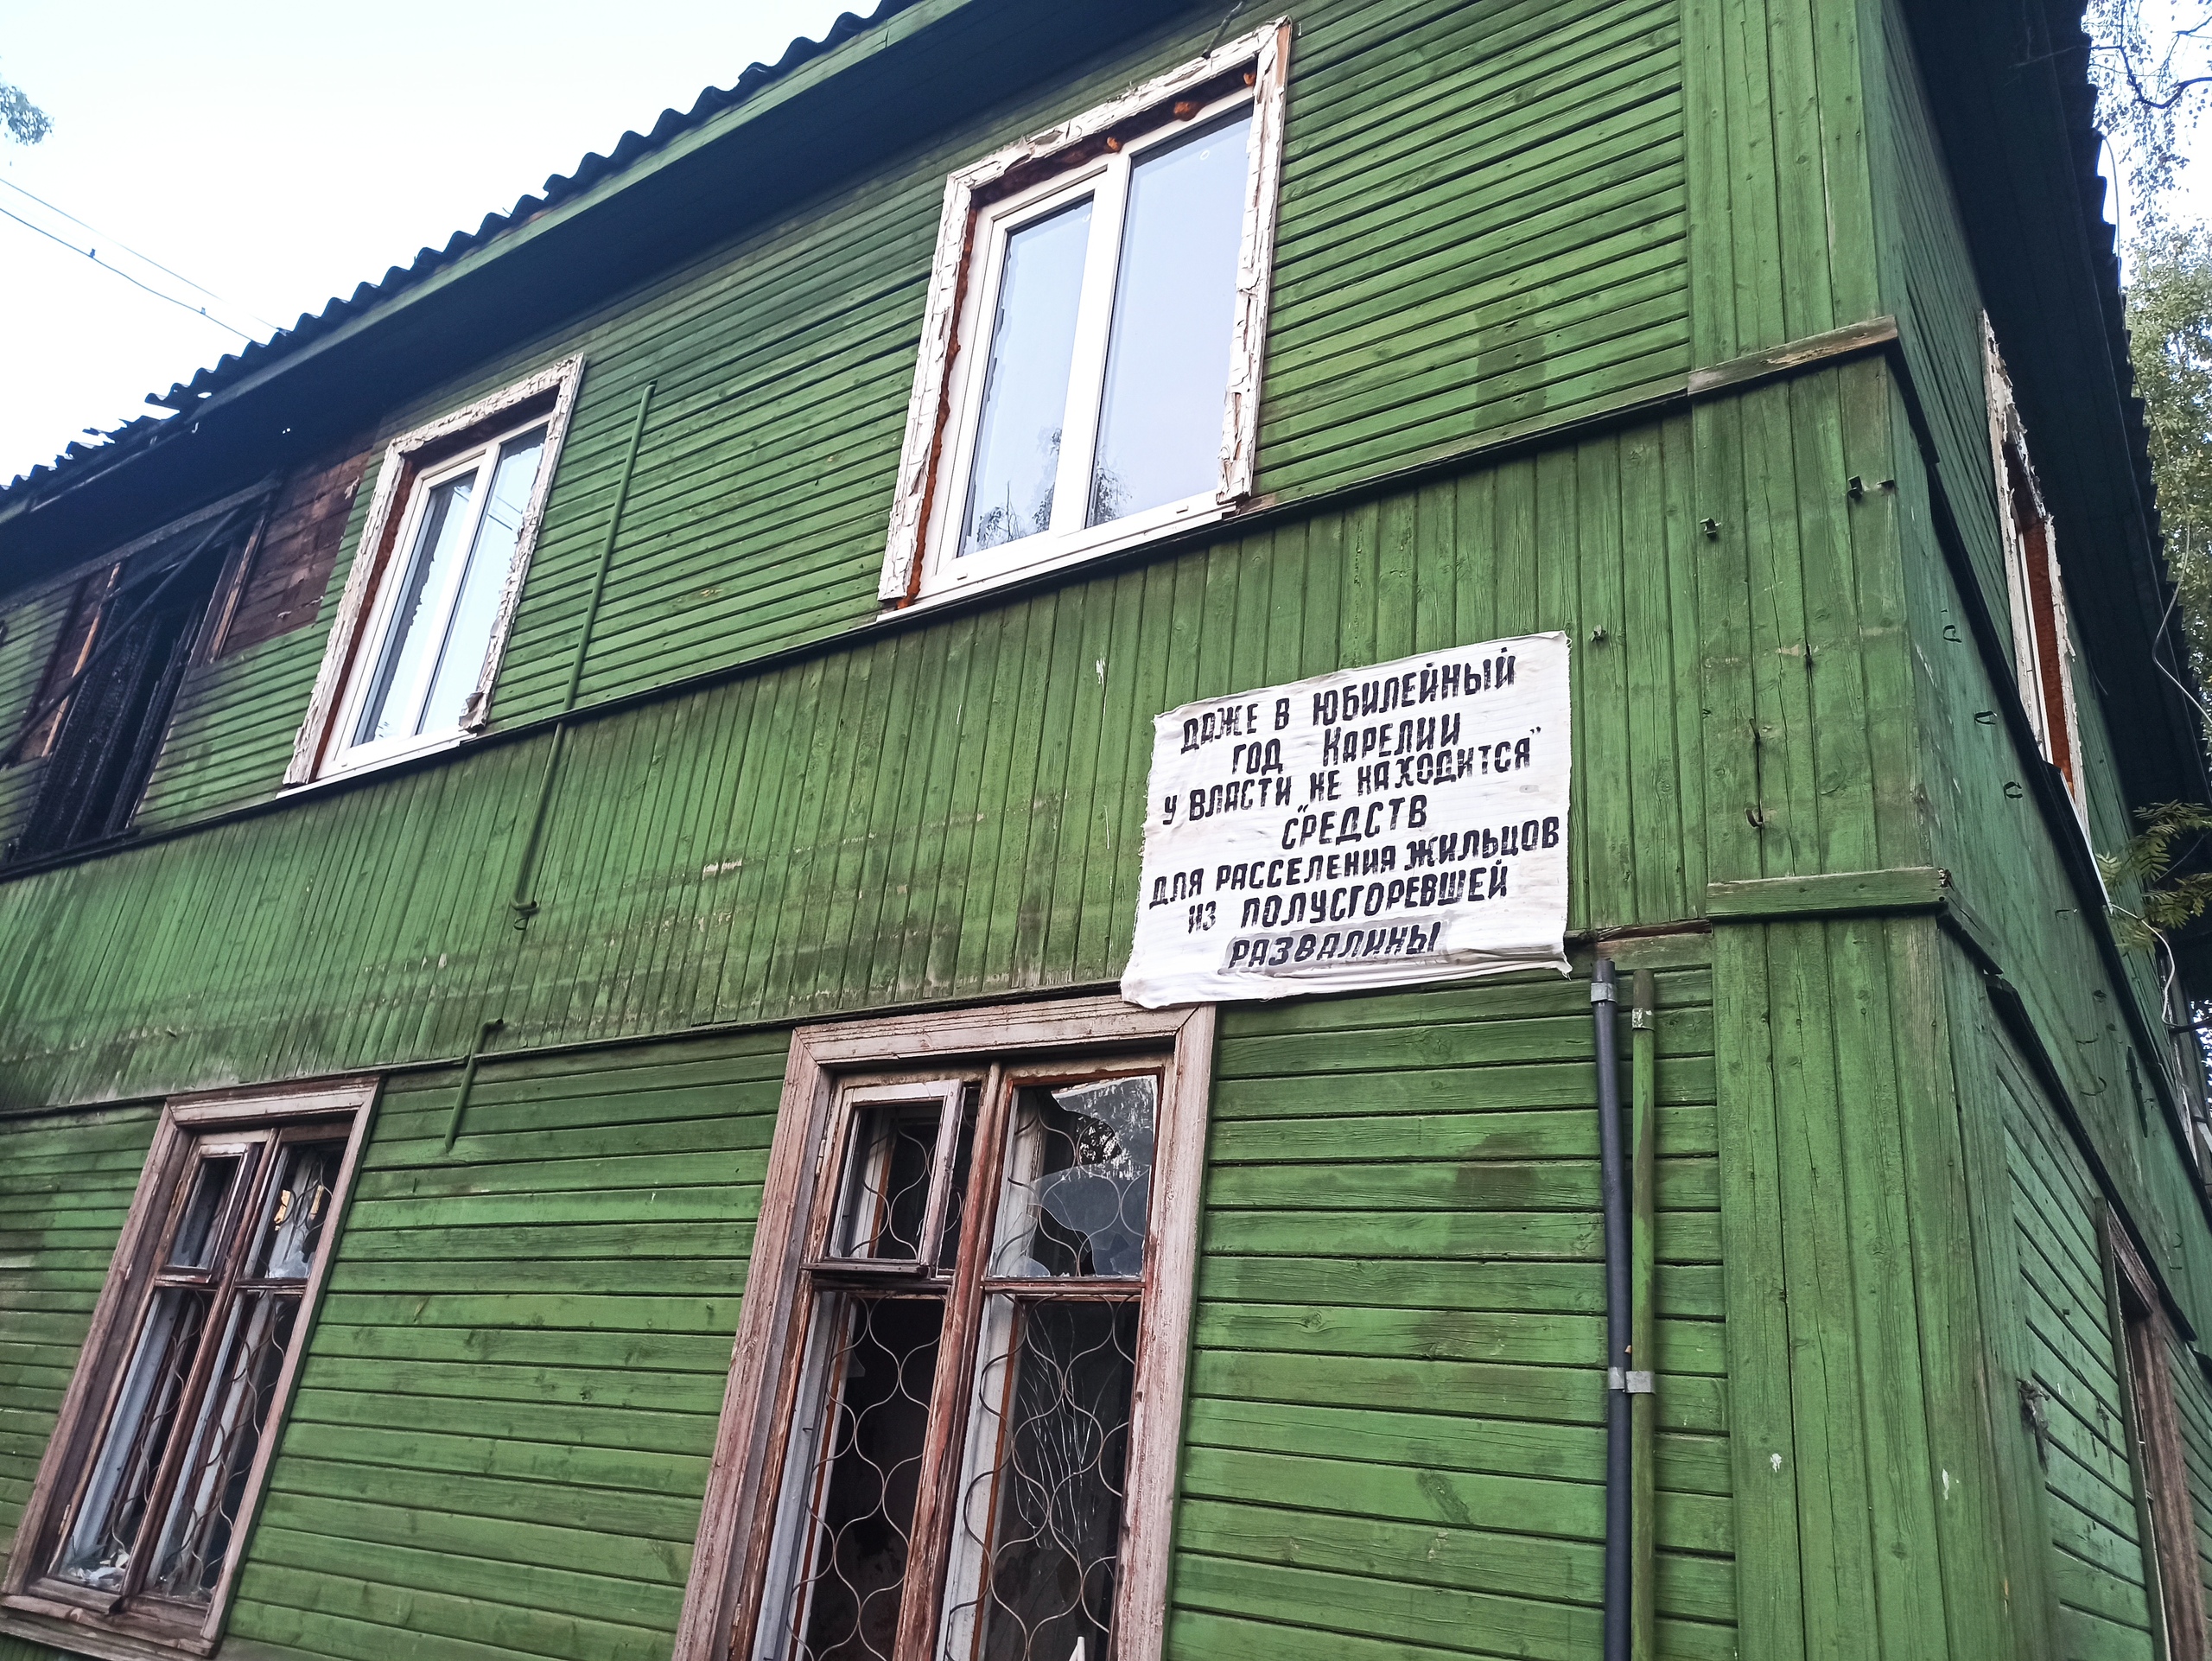 Жители разваливающегося дома в Петрозаводске написали плакат с гневным обращением к власти (ФОТО)